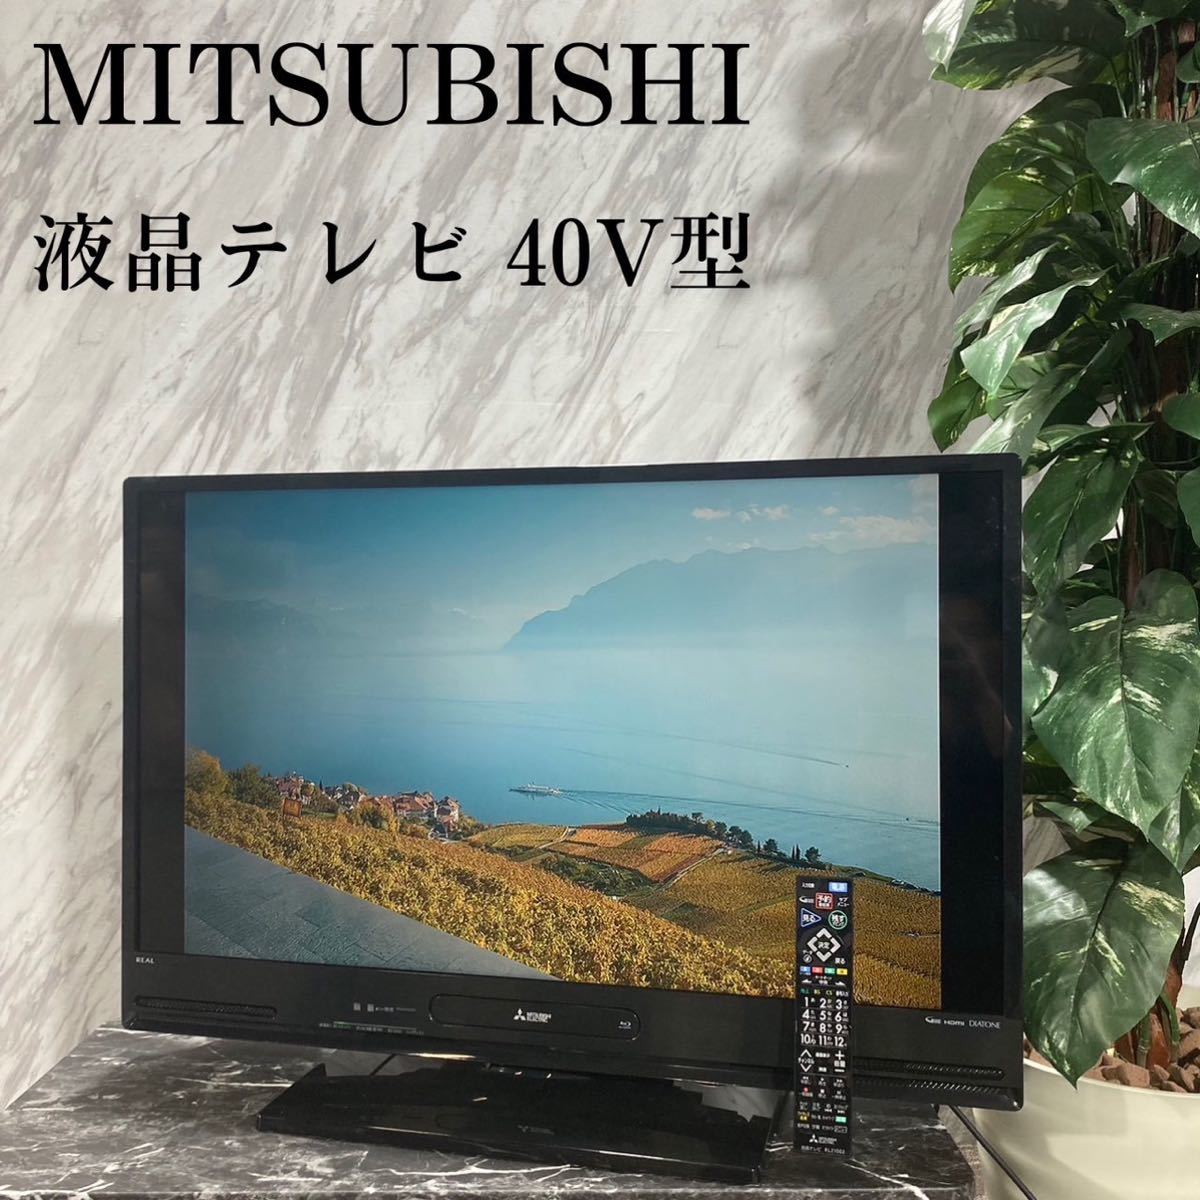 MITSUBISHI 液晶テレビ LCD-A40BHR7 40V型 E205-